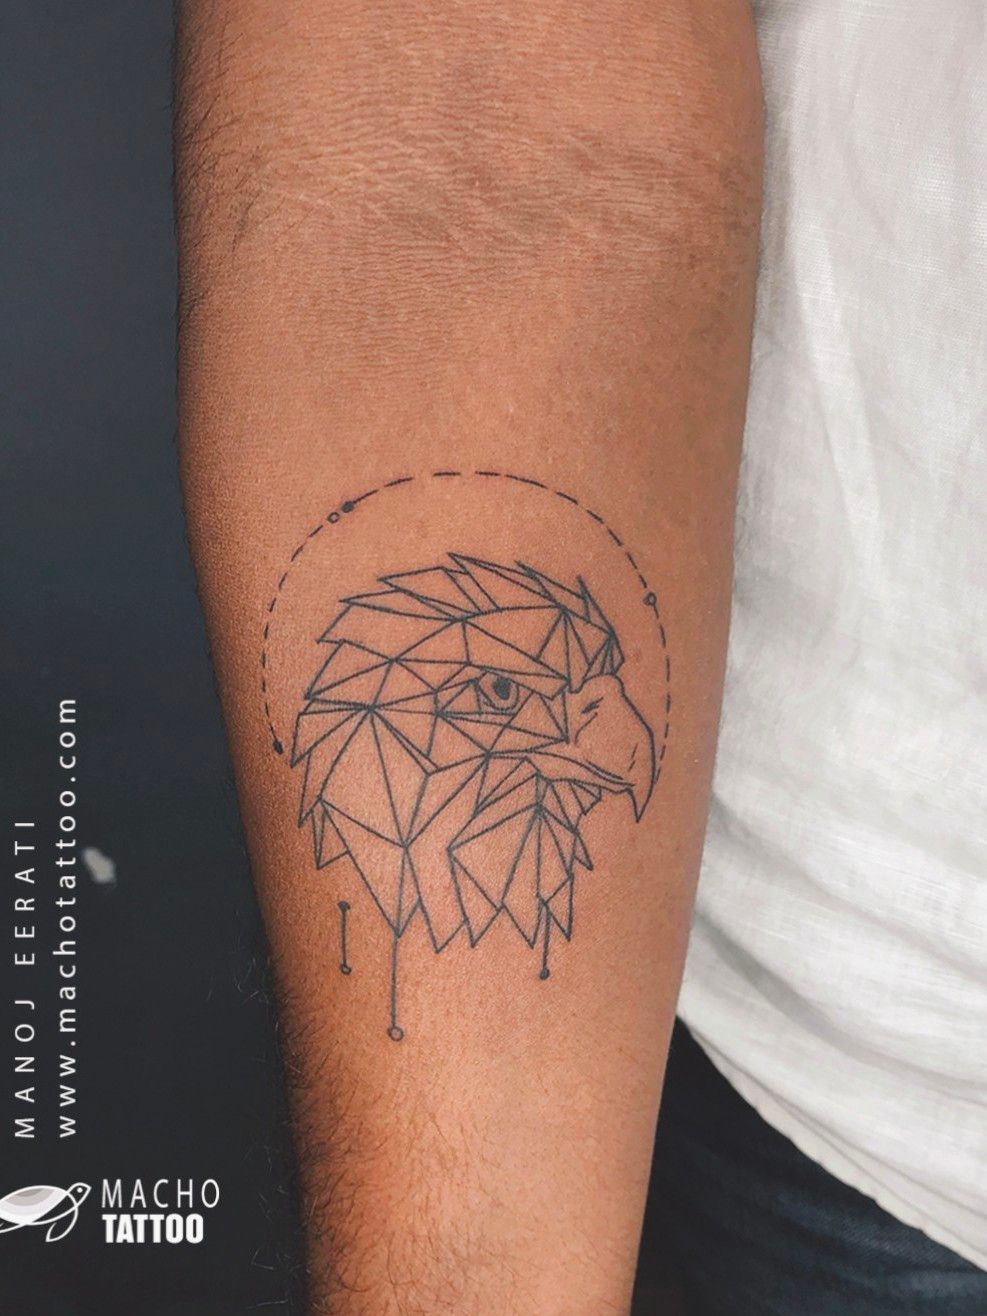 A friendship tattoo. 👭 #geometric #minimalist #finelinetattoo #tattoo #art  #design #inked #tattooed #tattoosofinstagram #instattoo | Instagram